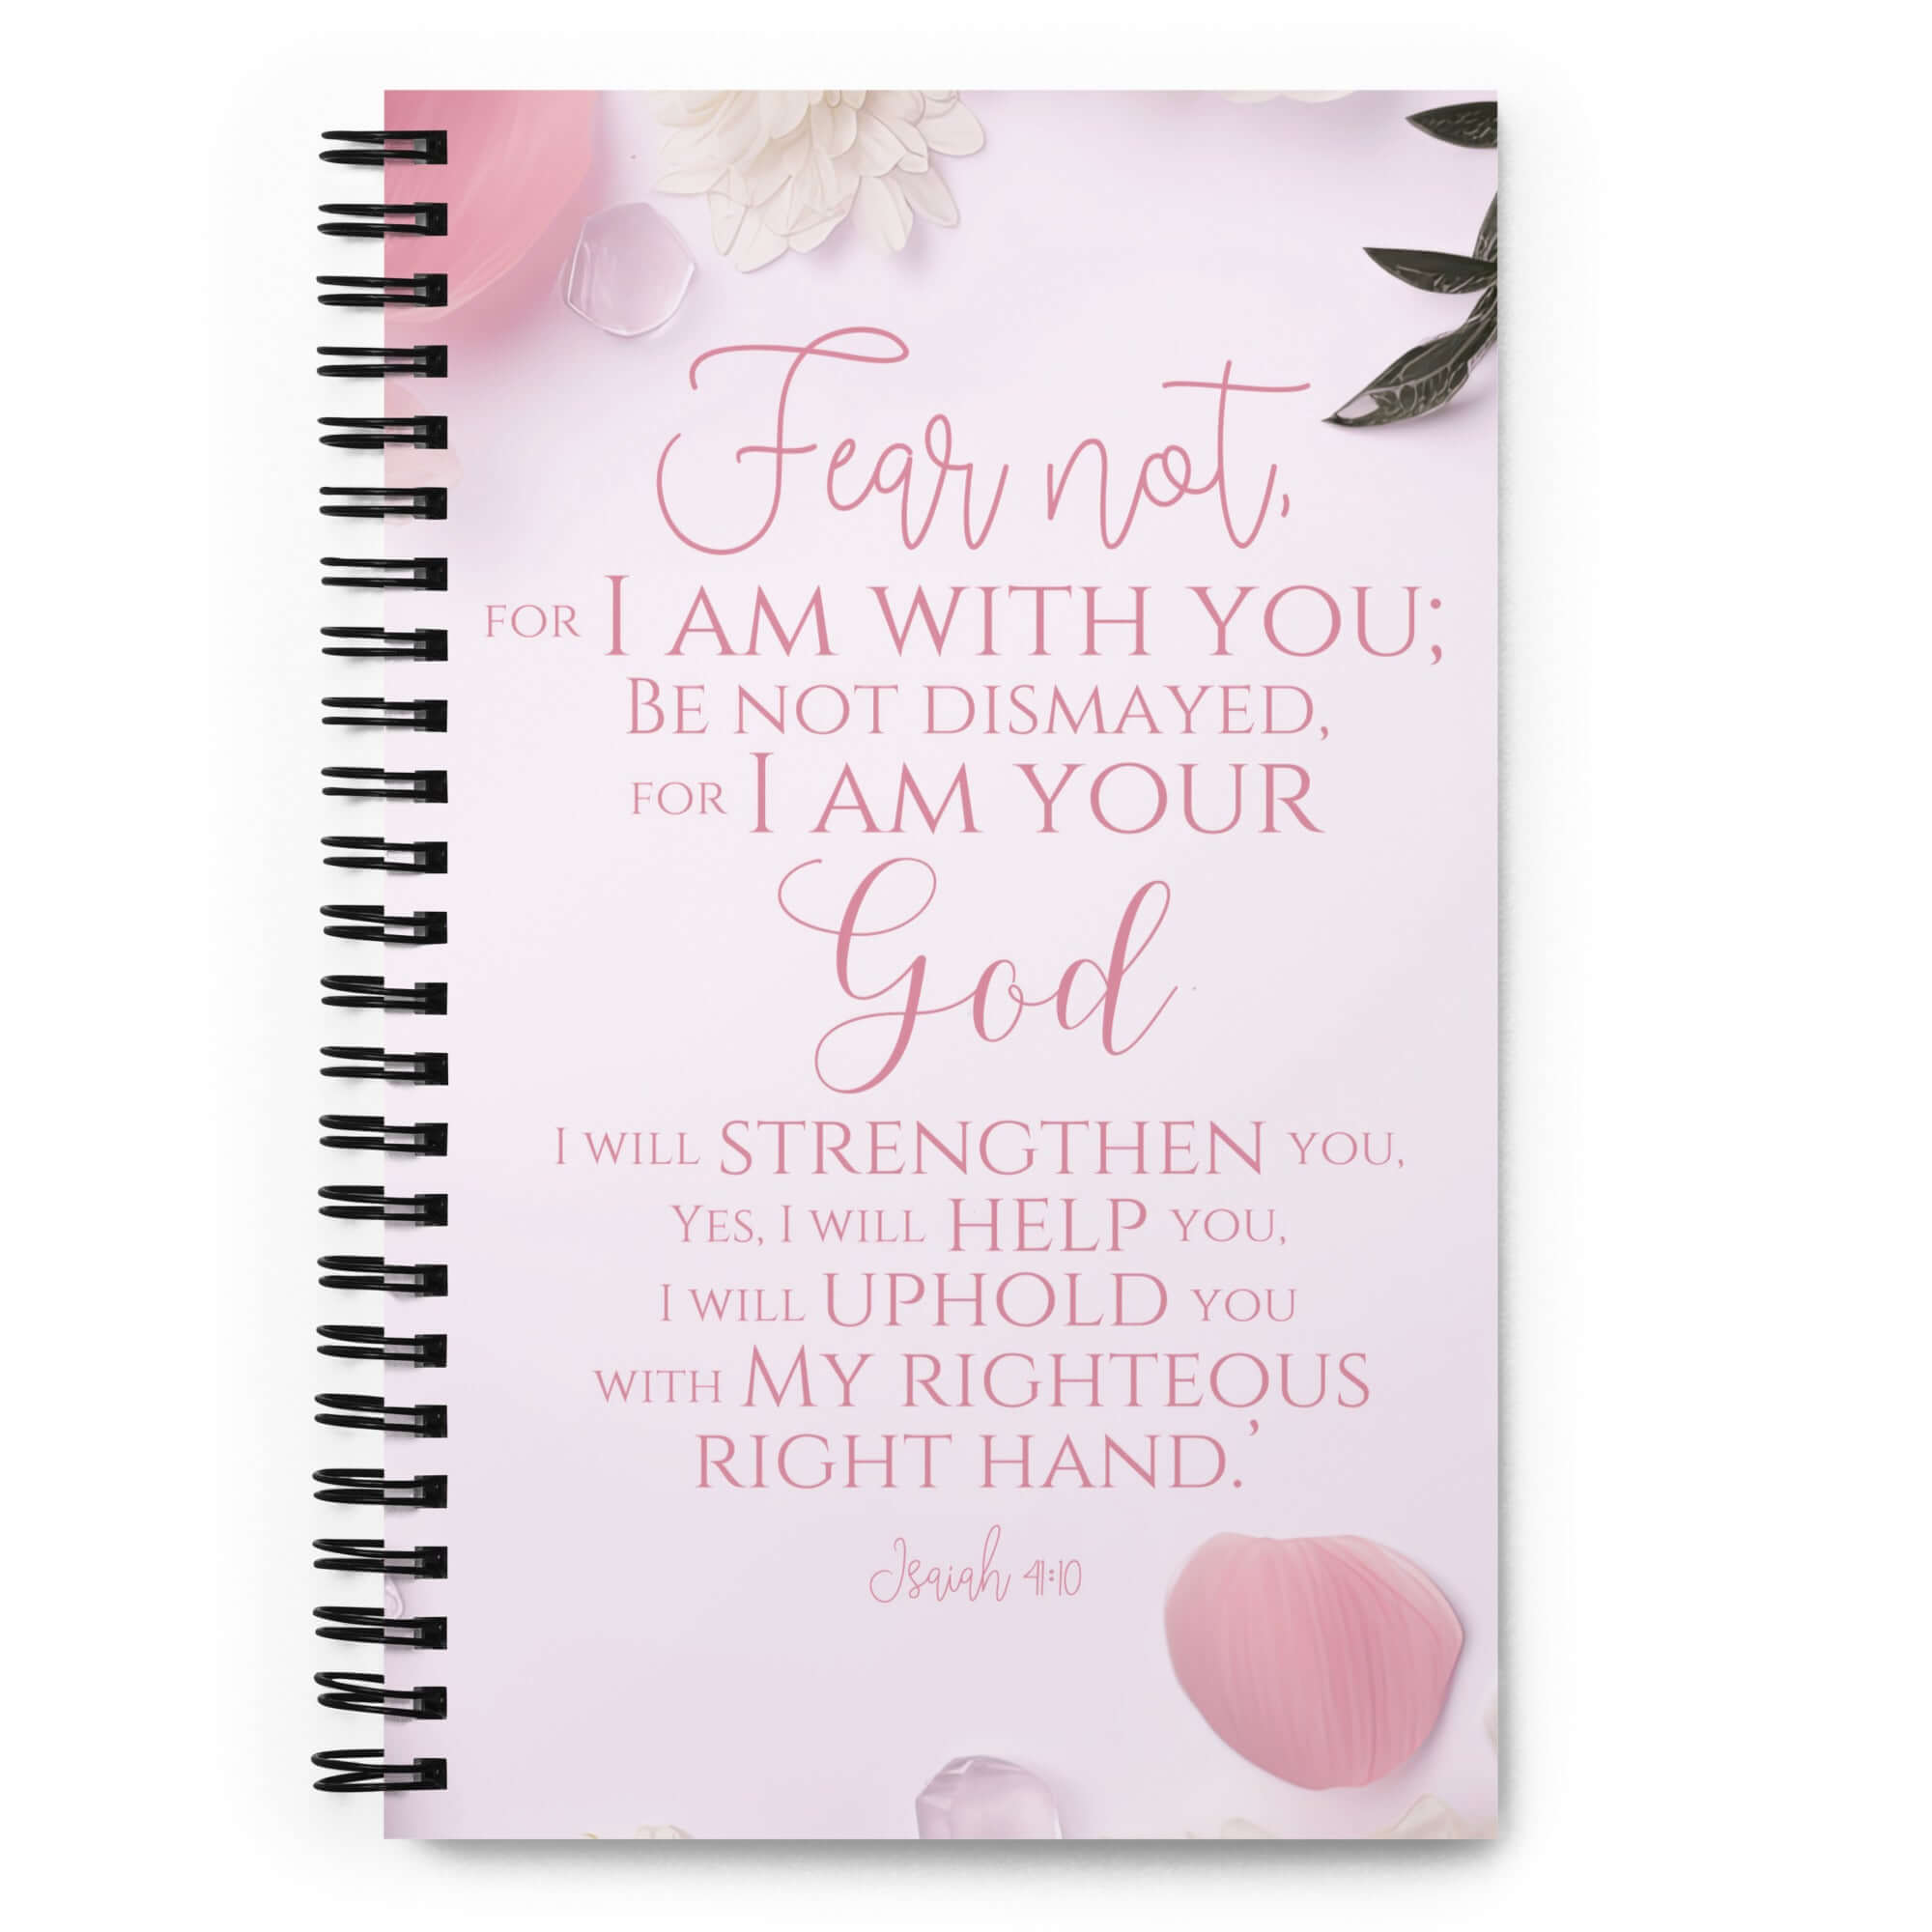 Isaiah 41:10 - Bible Verse, God will strengthen you Spiral Notebook